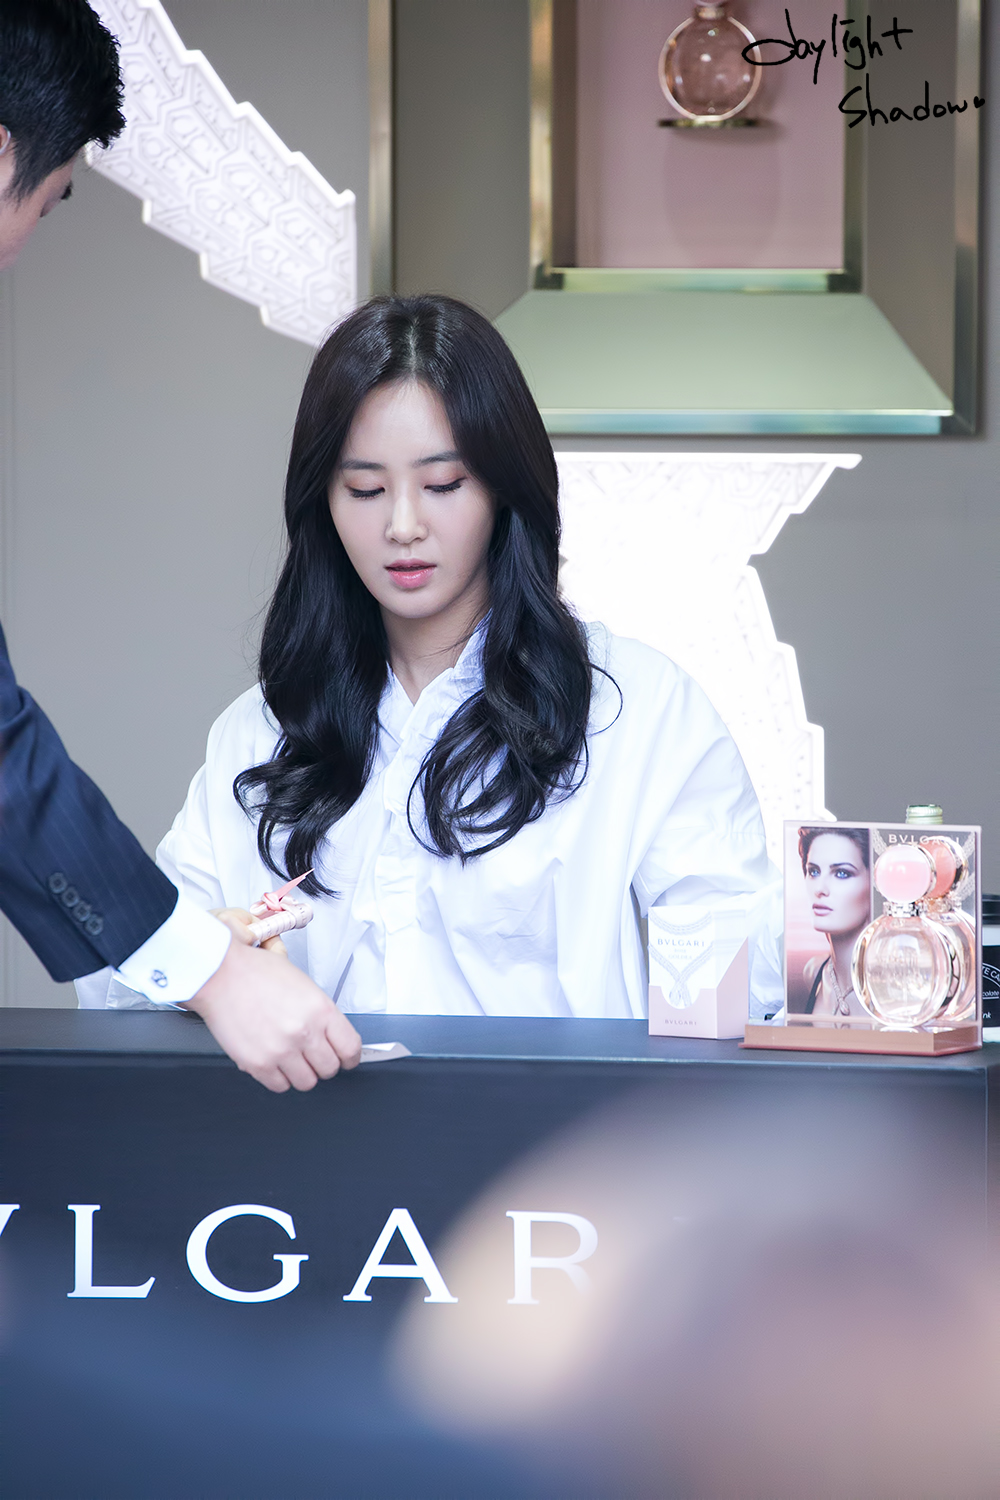 [PIC][09-10-2016]Yuri tham dự buổi Fansign thứ 2 cho thương hiệu nước hoa "BVLGARI Rose Goldea" tại Myeongdong Lotte Duty Free vào chiều nay - Page 4 27628D35587114D11E5F9C